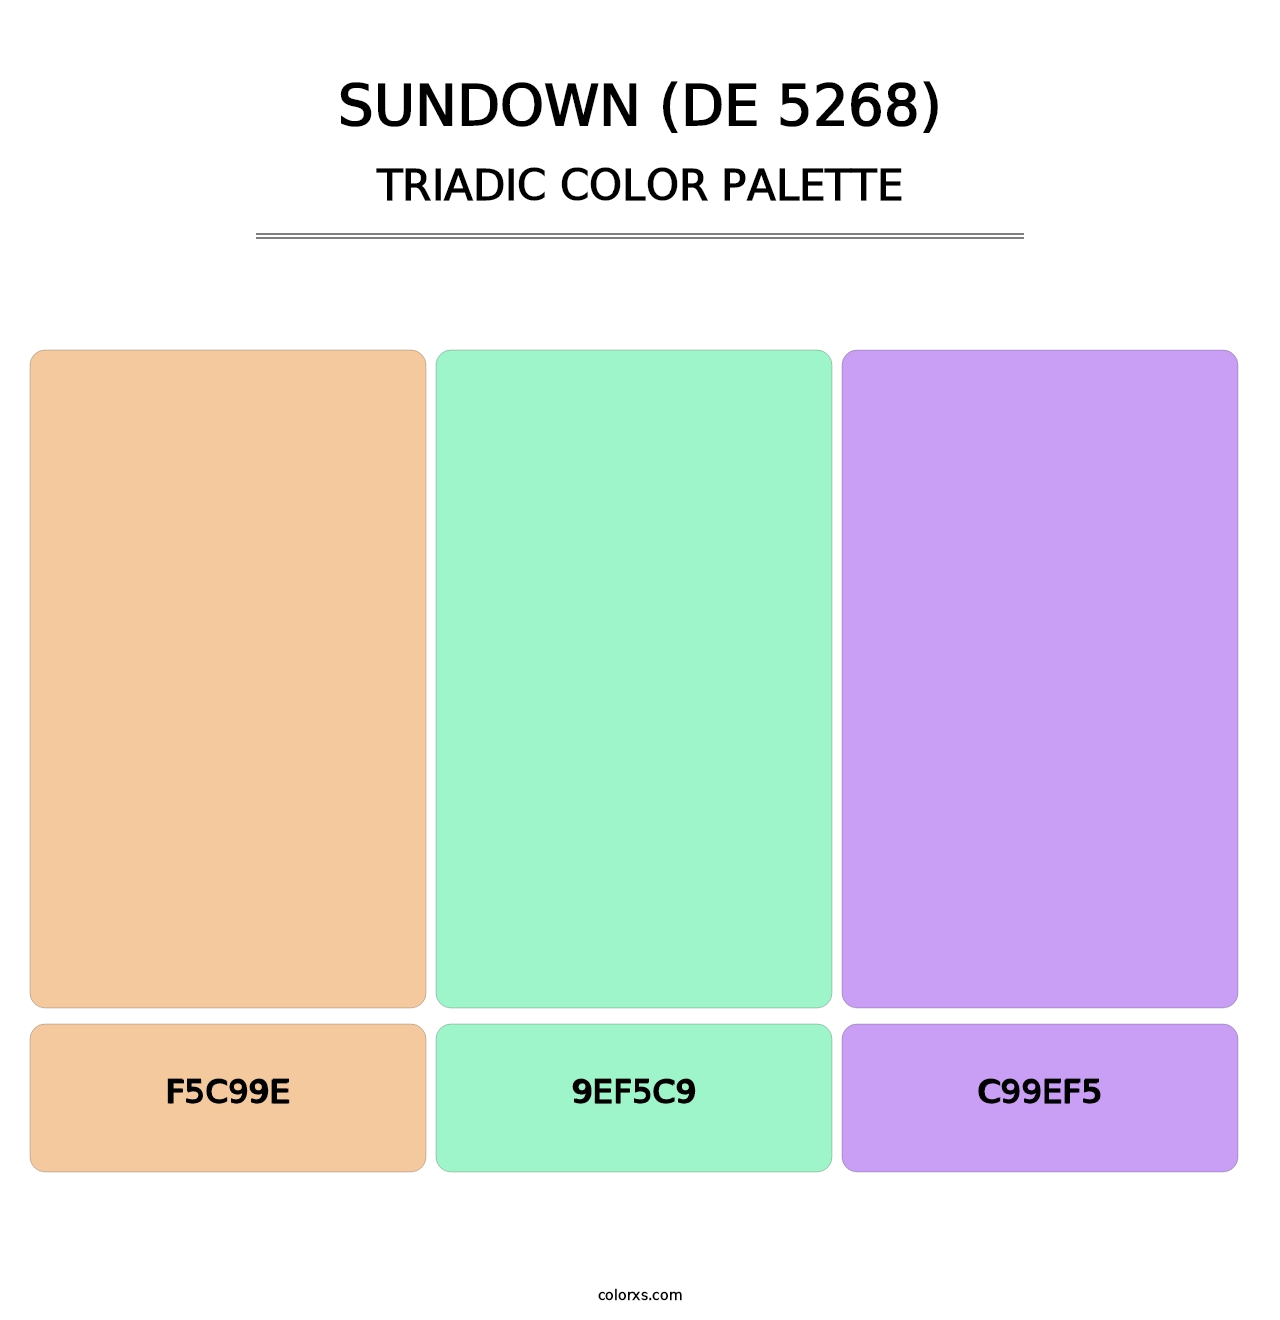 Sundown (DE 5268) - Triadic Color Palette